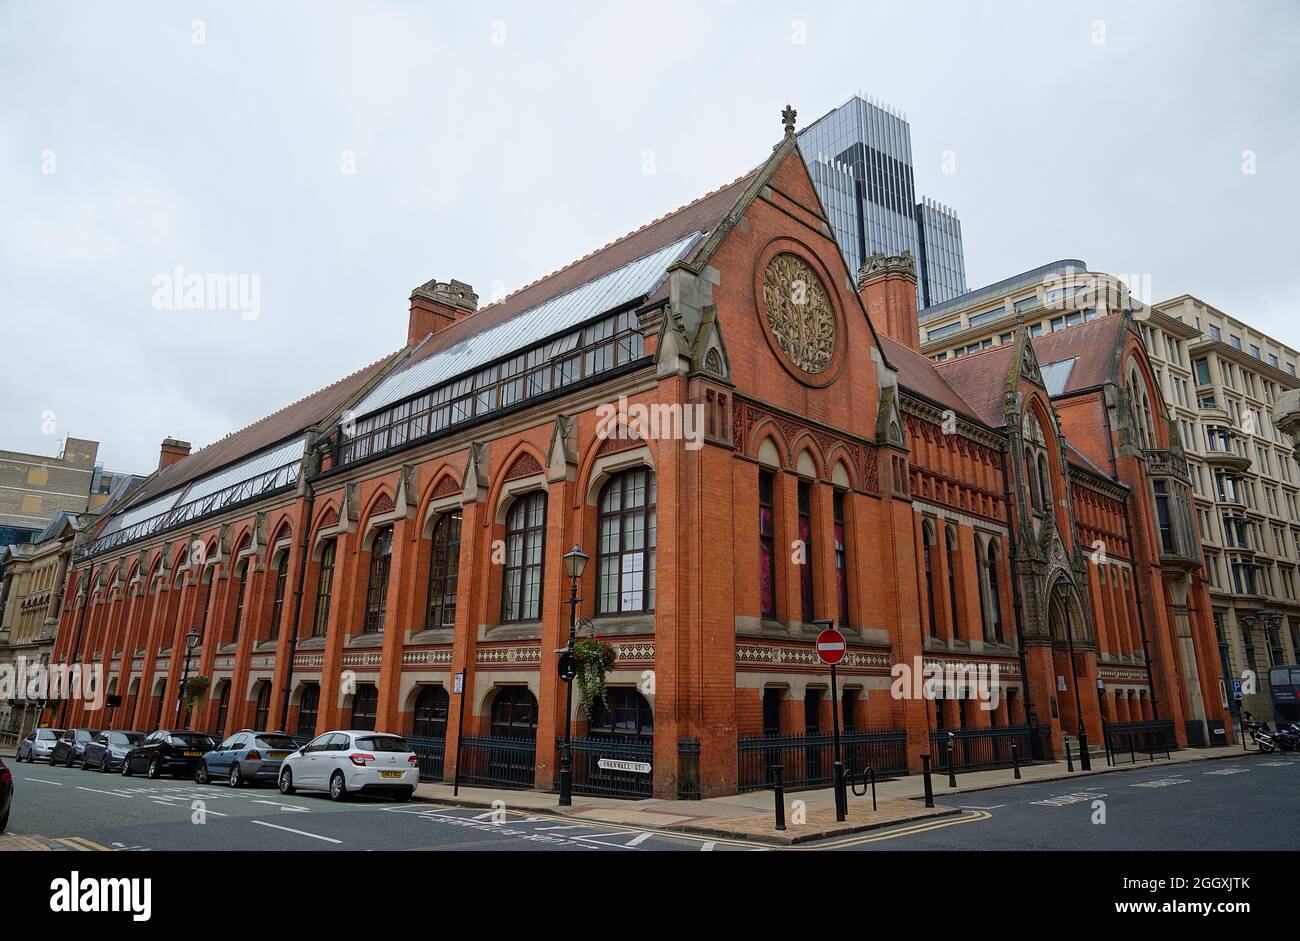 Birmingham School of Art building in Birmingham, West Midlands, England, UK. North light glass studio windows. Stock Photo